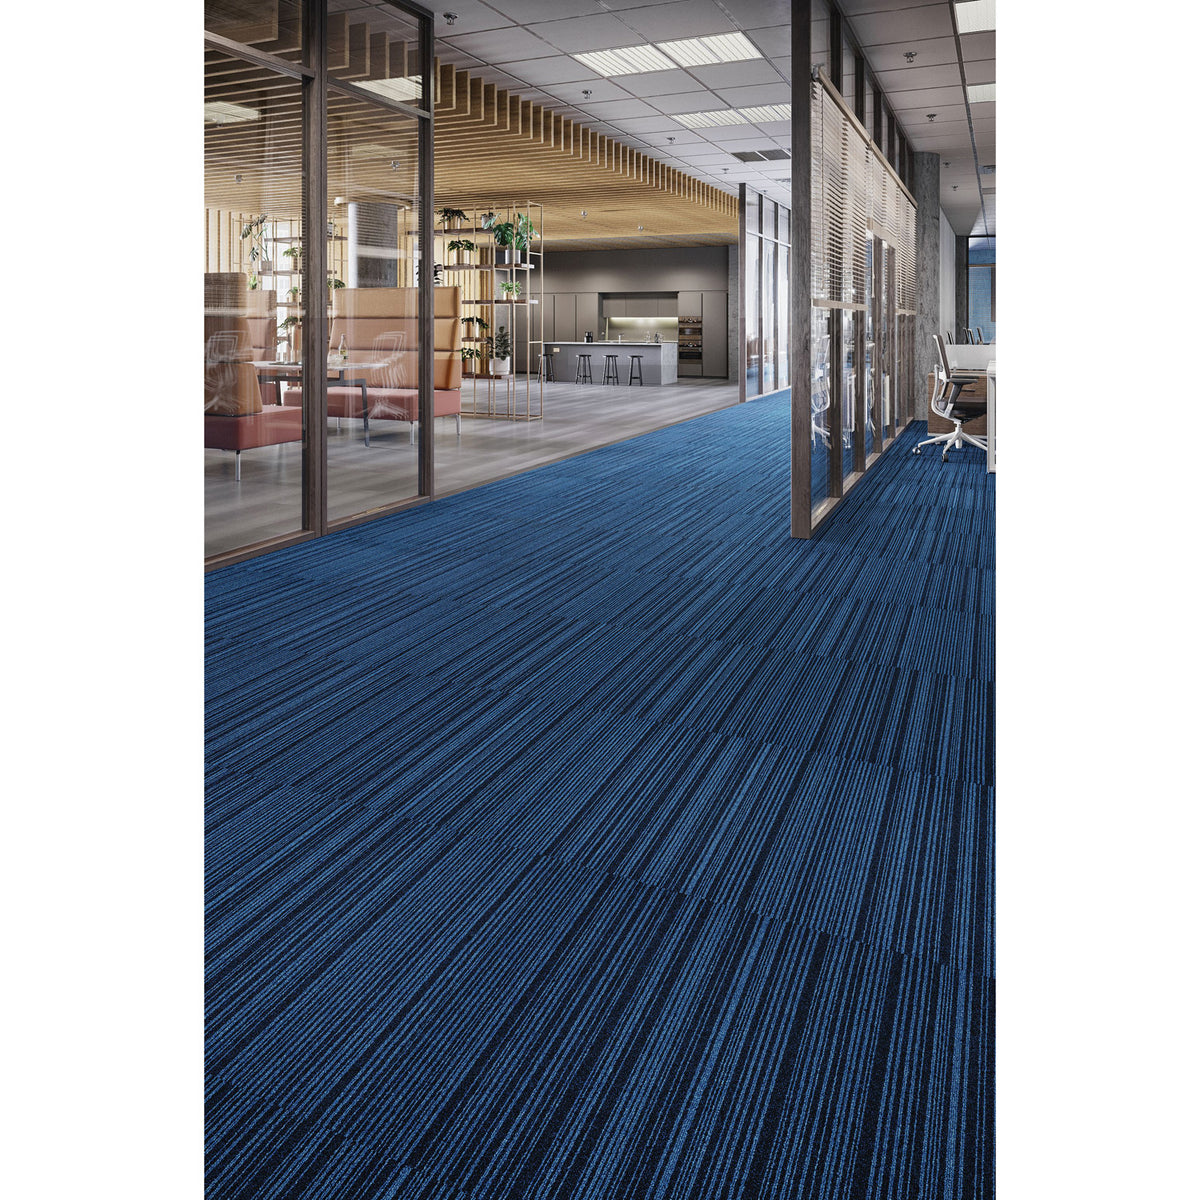 Mohawk Group - Art Intervention Draft Point Commercial Carpet Tile - Jet 989